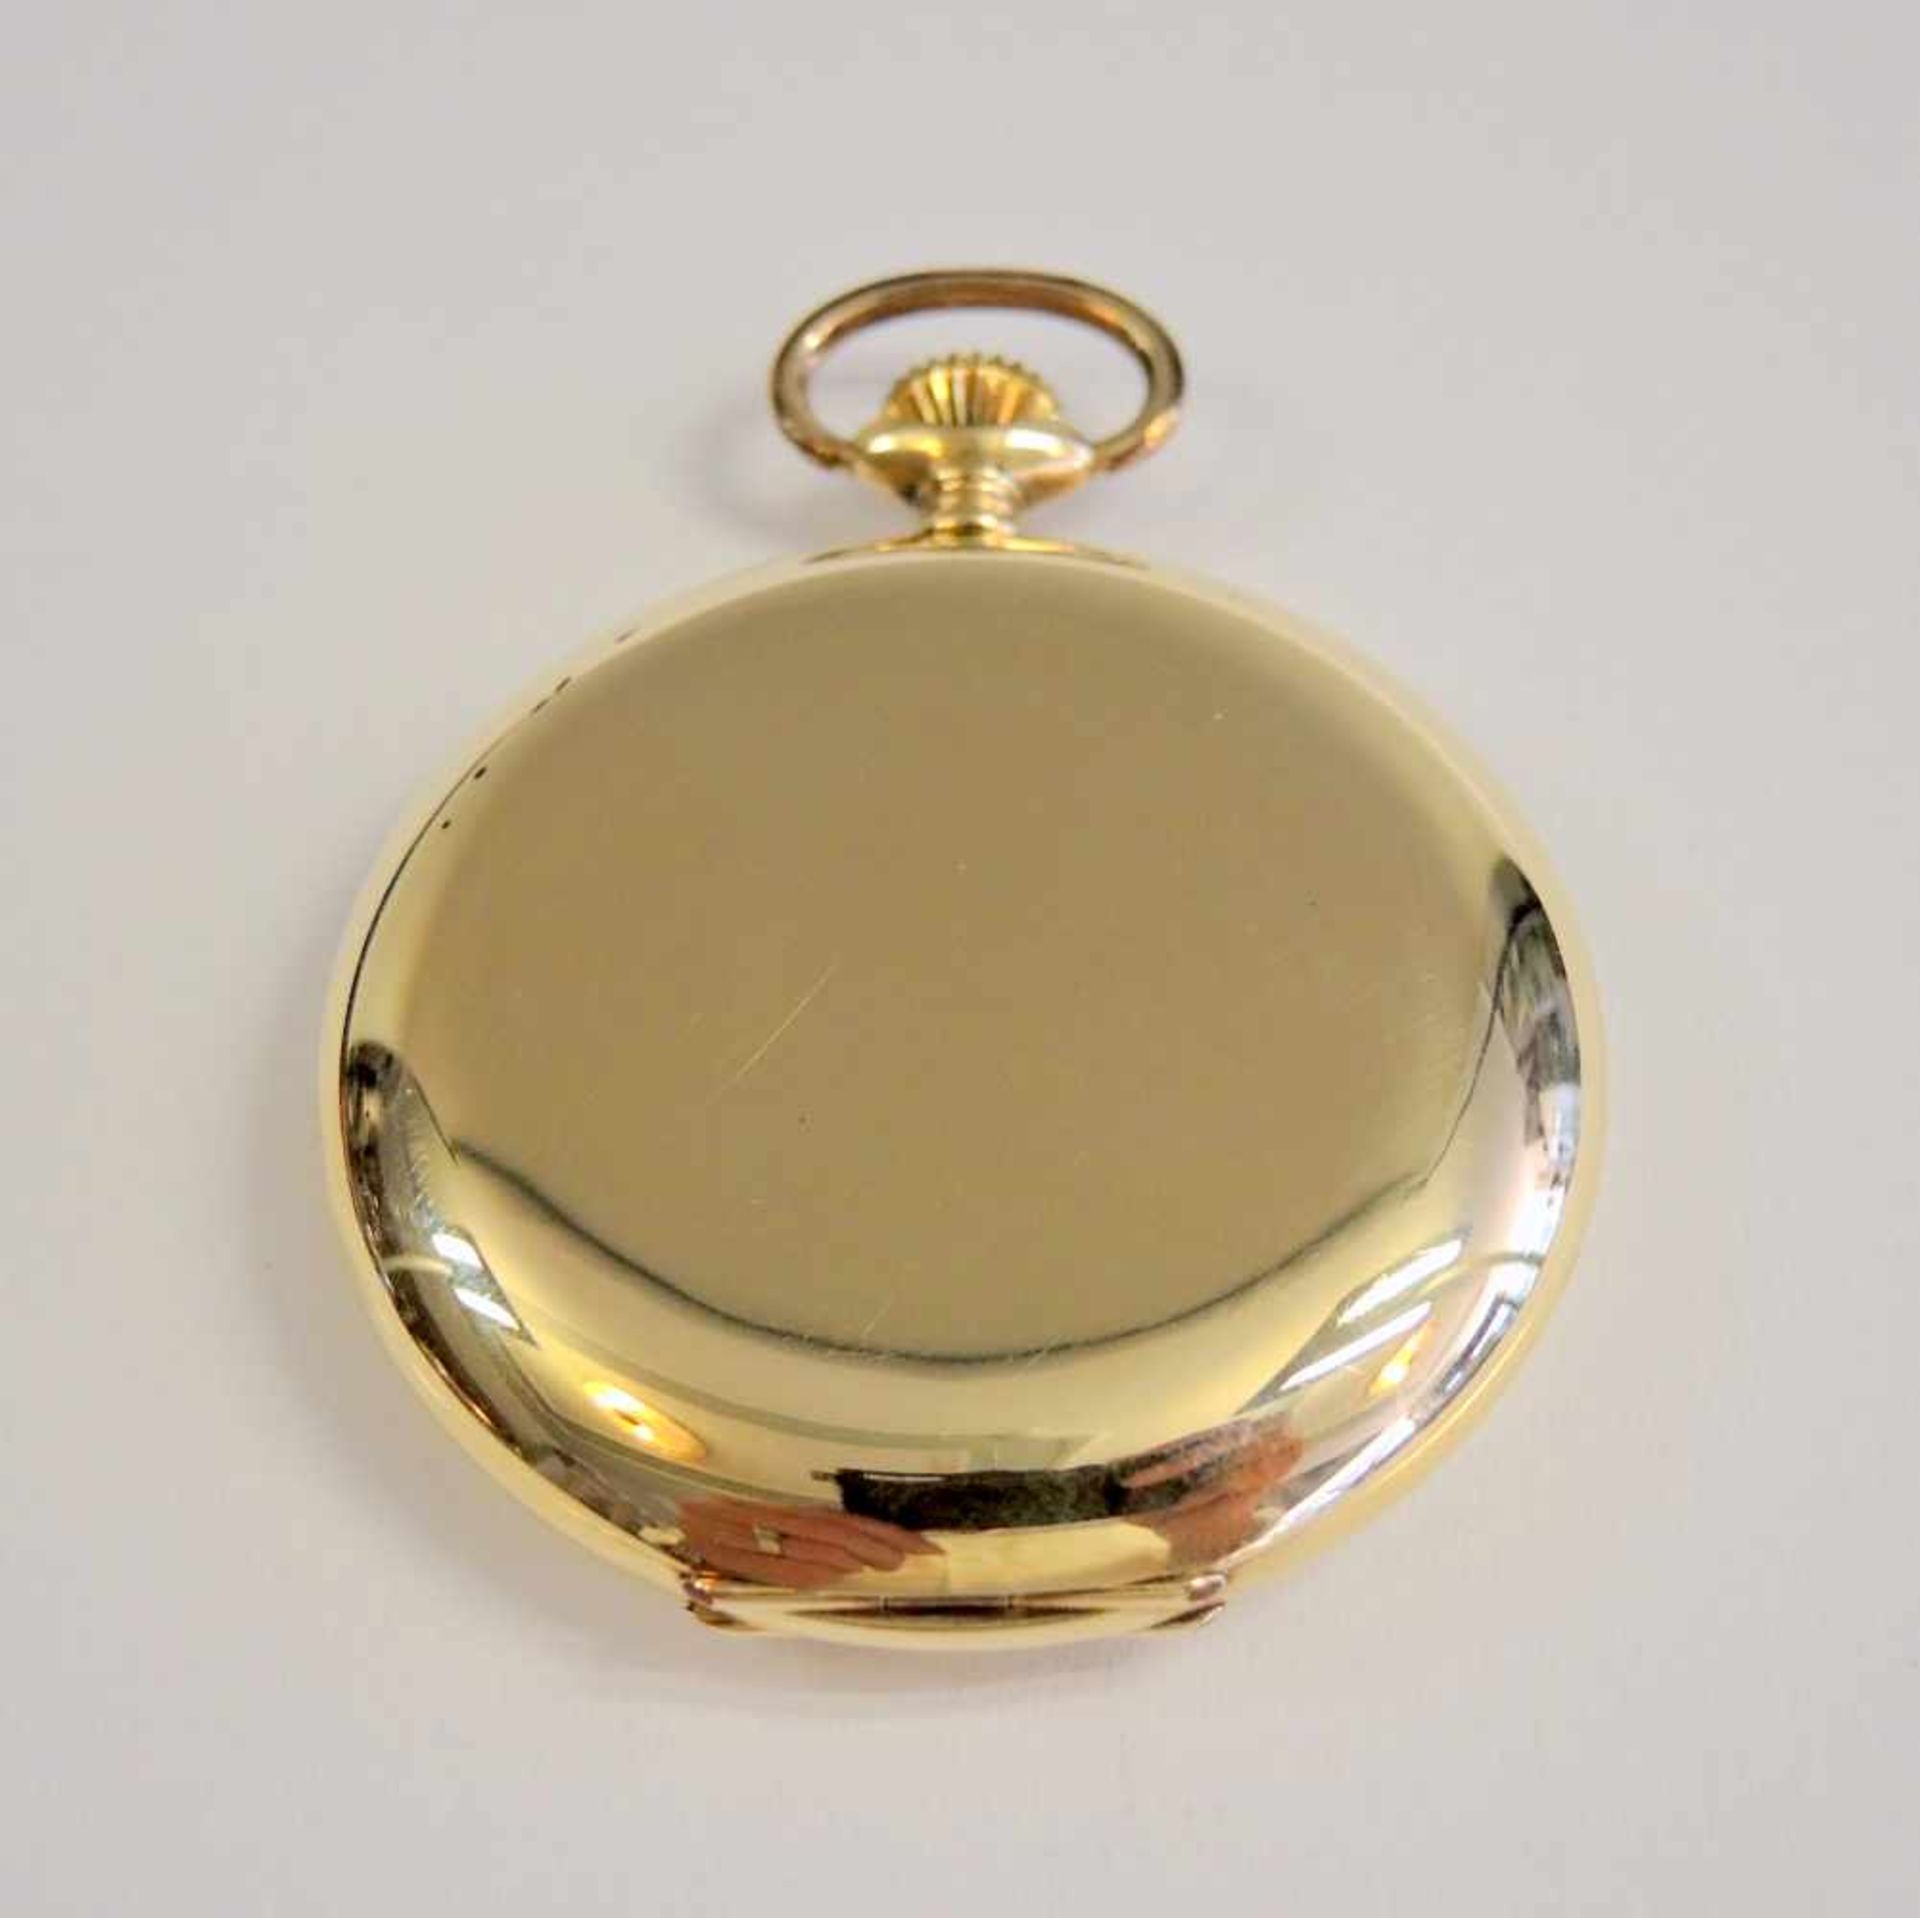 Tissot, Savonette-Taschenuhr14 K. Gelbgold. Gut erhalten, gangbar. Um 1920. Ø ca. 50 mm, Gewicht - Image 3 of 3